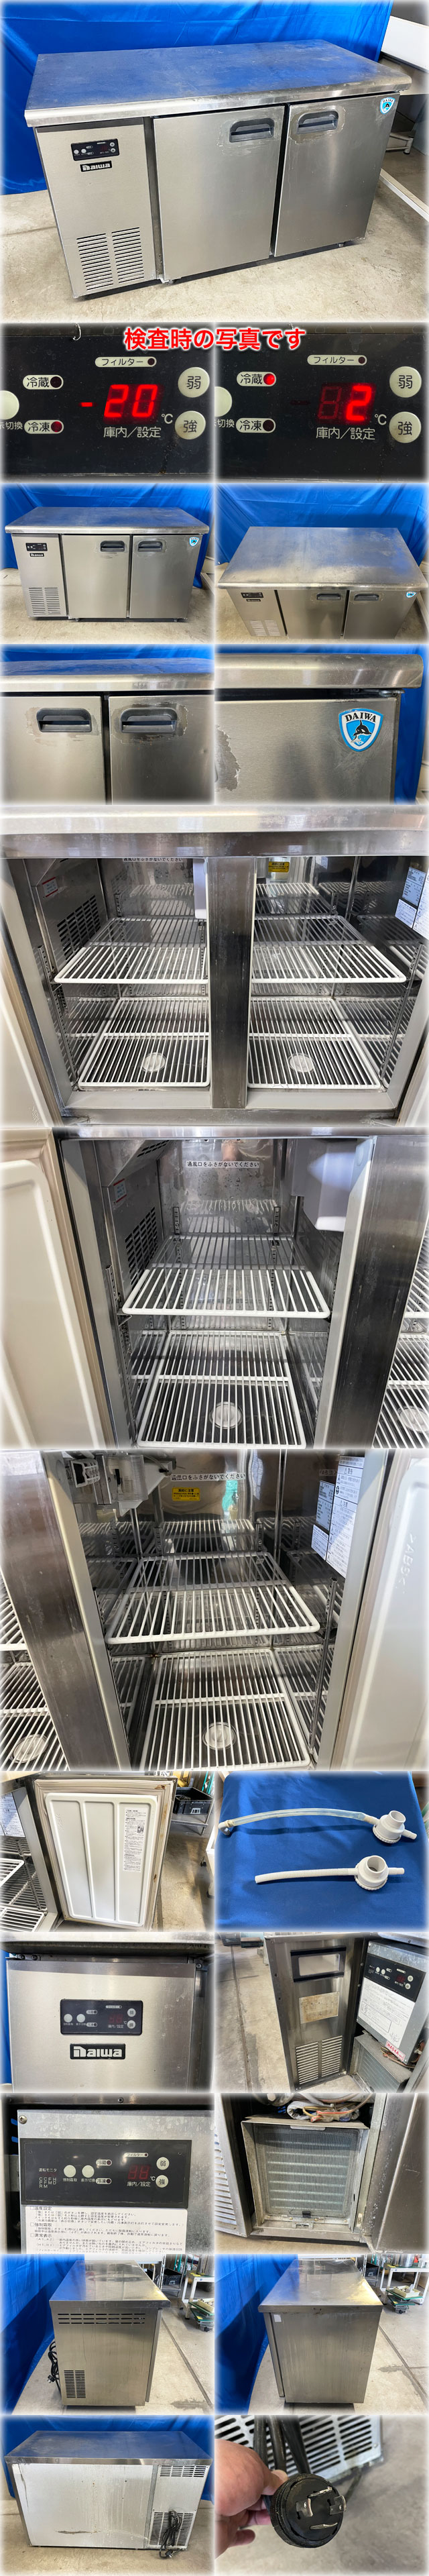 販売激安ダイワ冷機 冷凍冷蔵コールドテーブル 4663S 1200x600x800mm 冷凍109L:冷蔵113L 三相200V ヨコ型 台下冷凍冷蔵庫 冷凍冷蔵庫